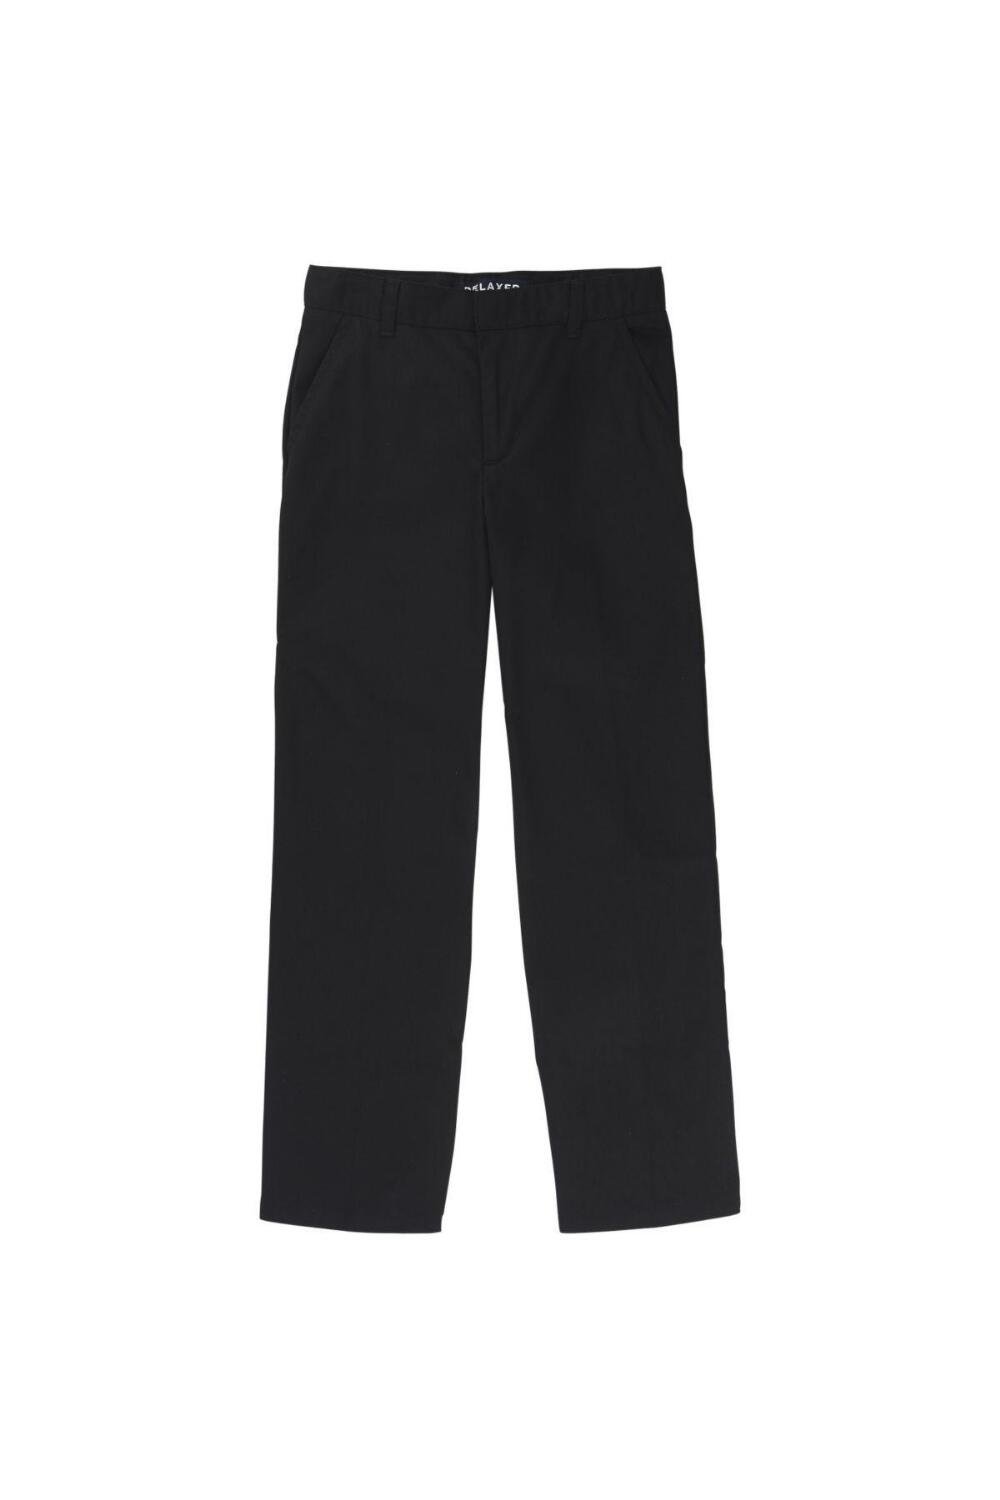 Boy's Adjustable Waist Double Knee Pant (Pant Color: Black, Pant Size: Size 4)